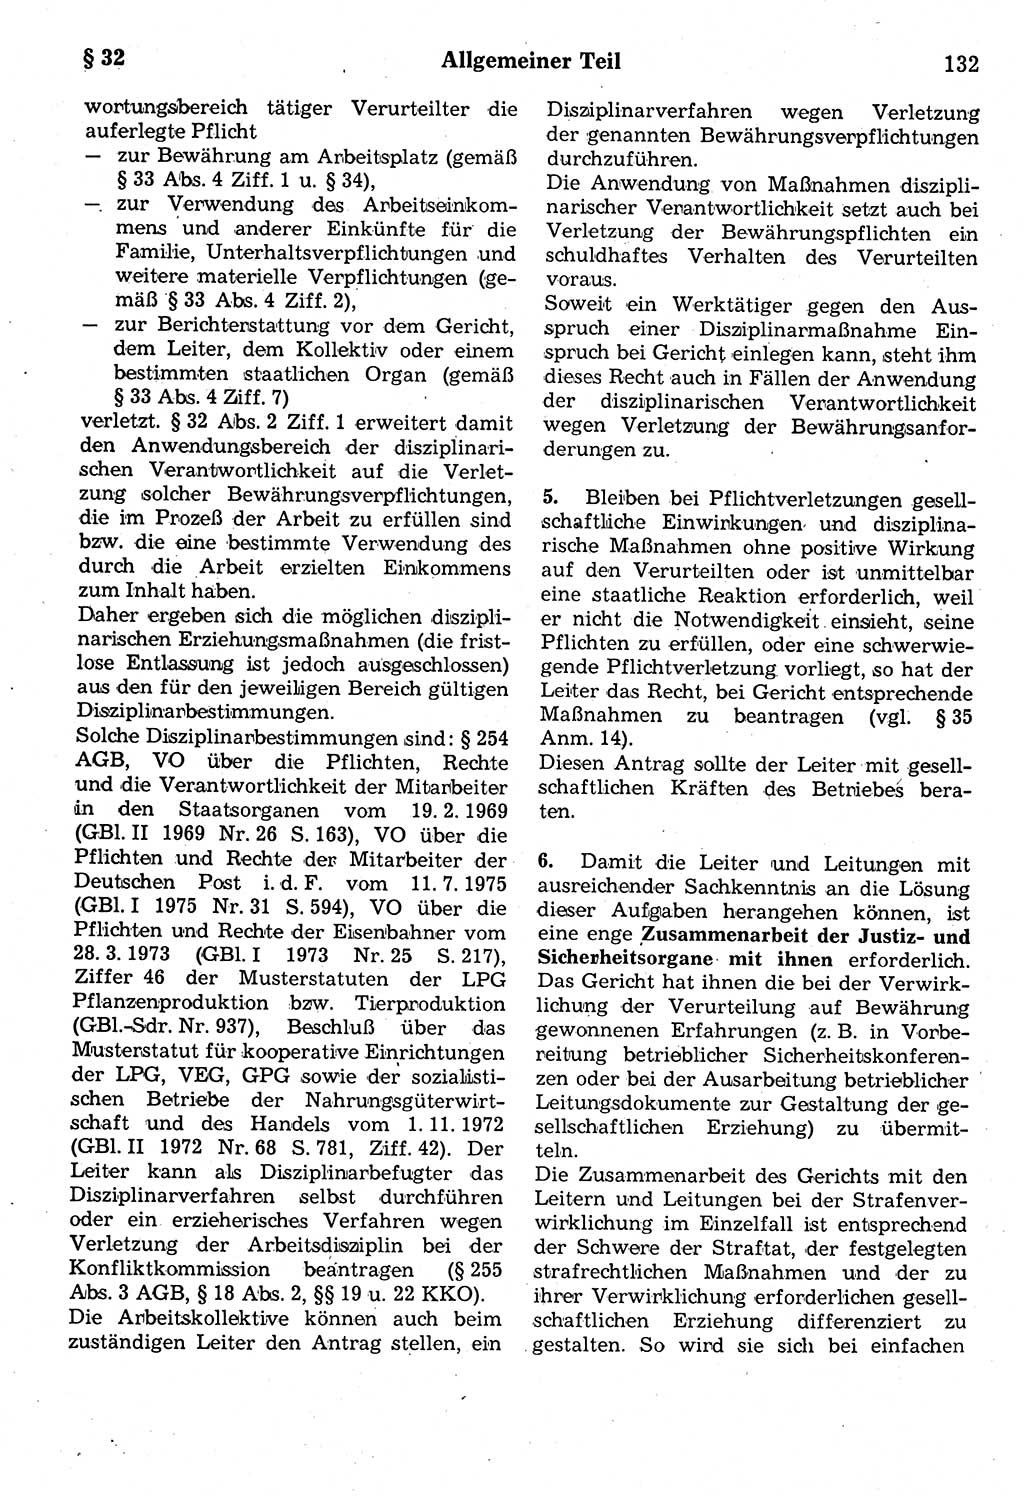 Strafrecht der Deutschen Demokratischen Republik (DDR), Kommentar zum Strafgesetzbuch (StGB) 1987, Seite 132 (Strafr. DDR Komm. StGB 1987, S. 132)